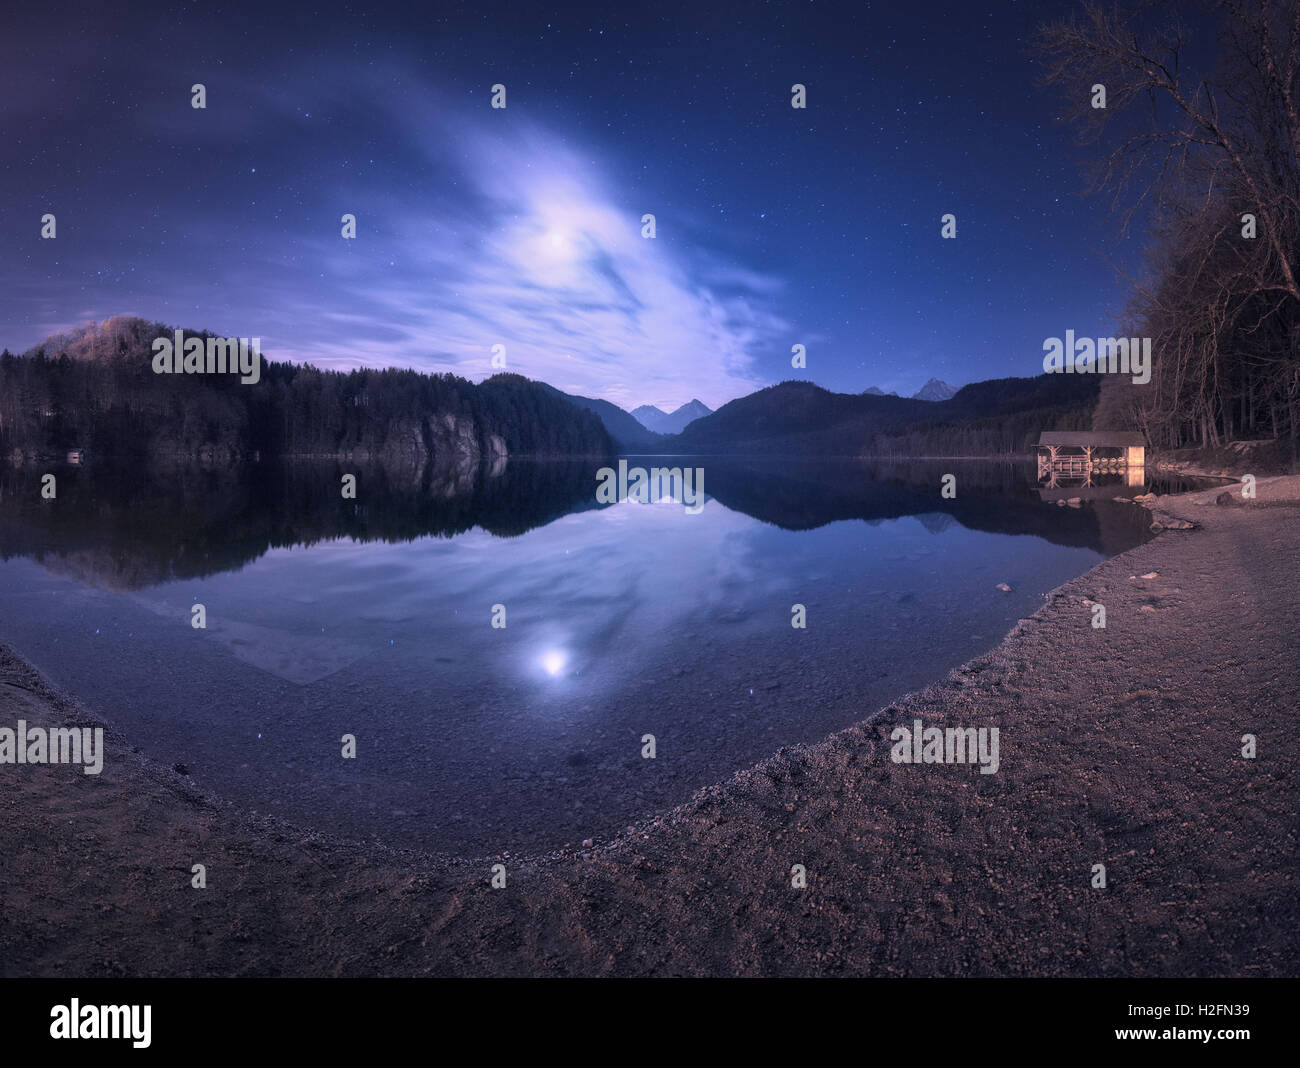 Paysage de nuit avec le lac, les montagnes, la forêt, les étoiles, la pleine lune, violet ciel et nuages reflètent dans l'eau. Nuit de printemps Banque D'Images